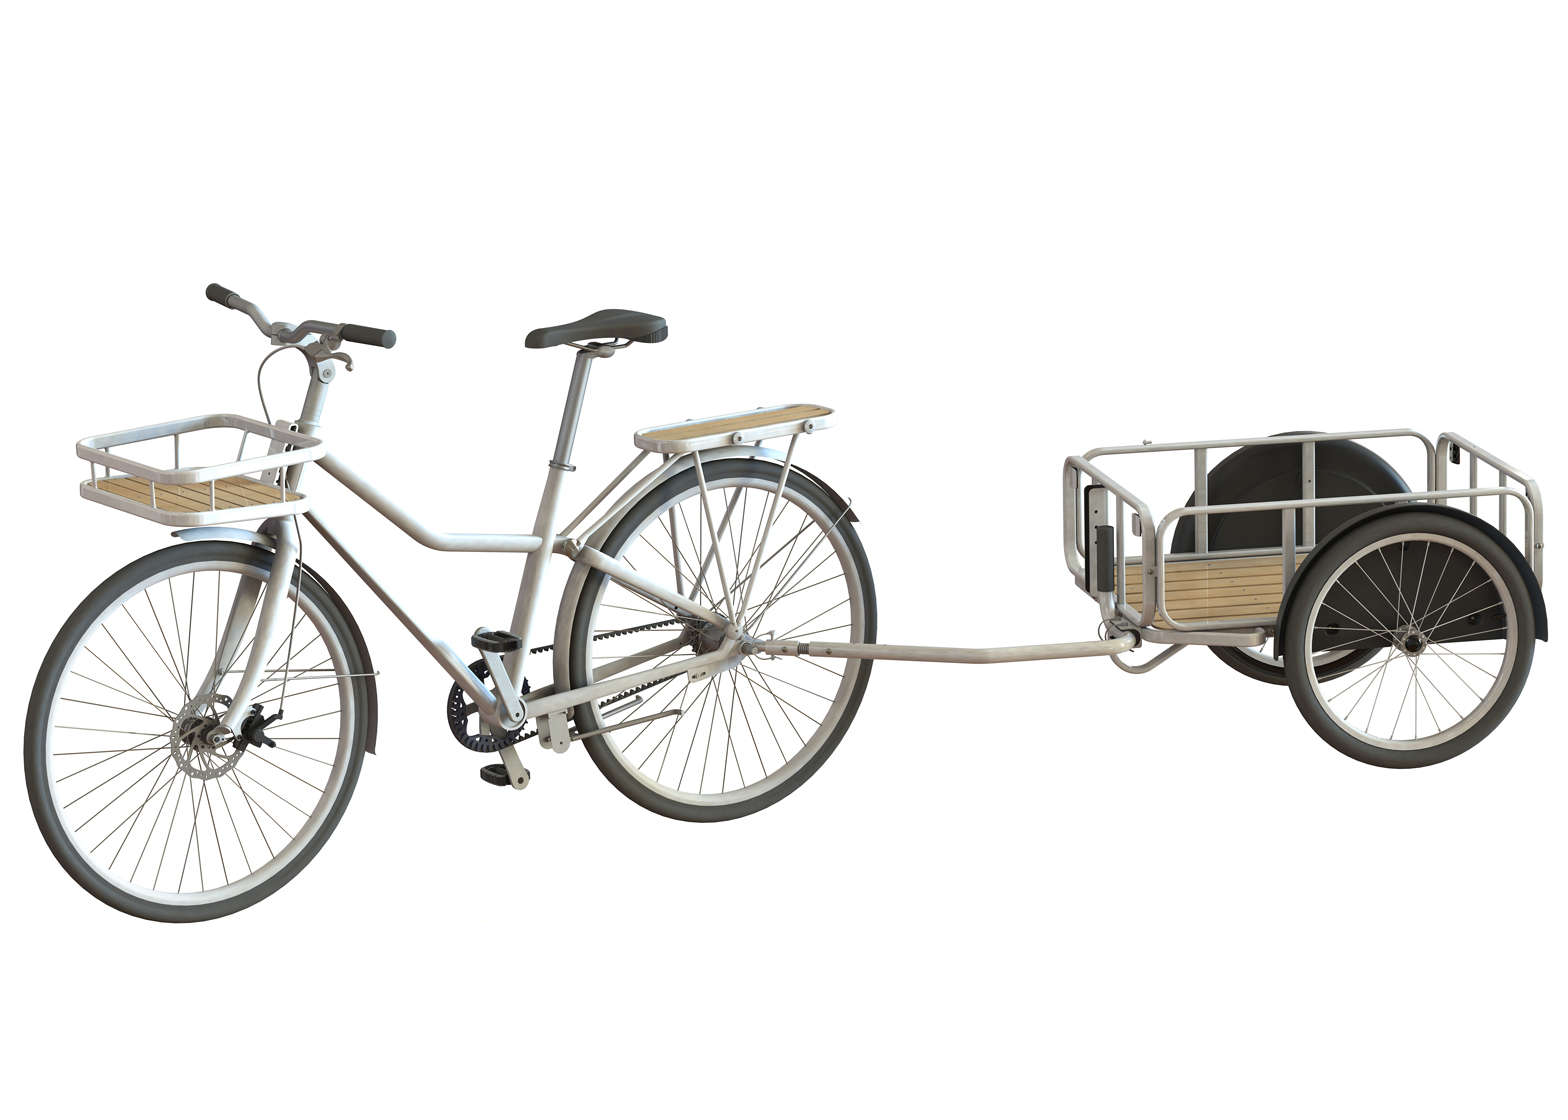 Ikea presenta Sladda: bici componibile